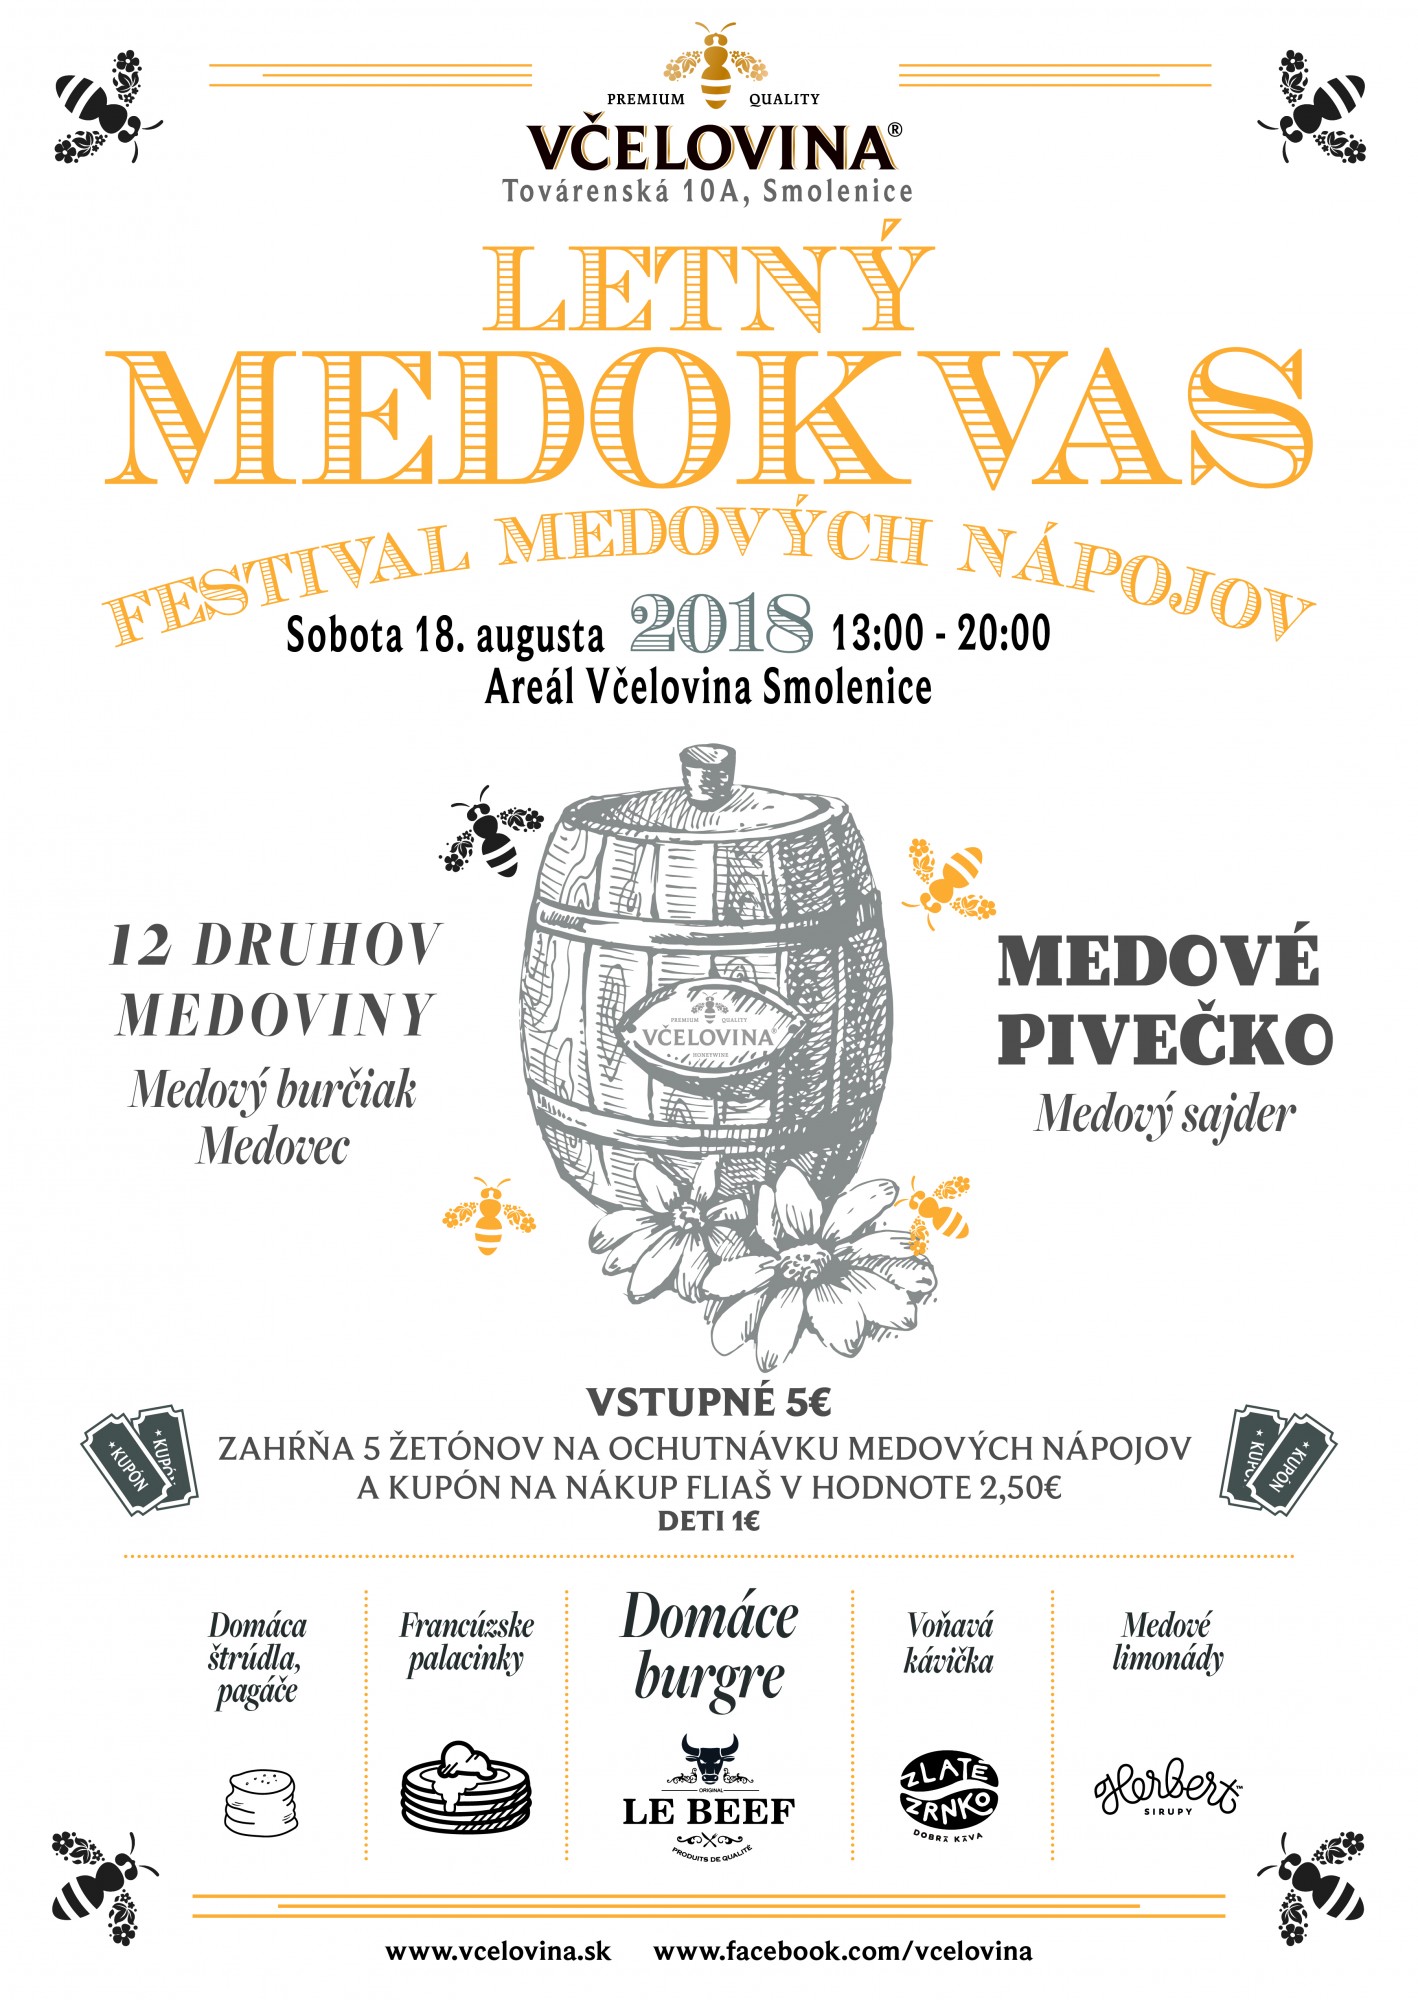 Letn MEDOKVAS 2018 Smolenice - smolenick festival medovch npojov